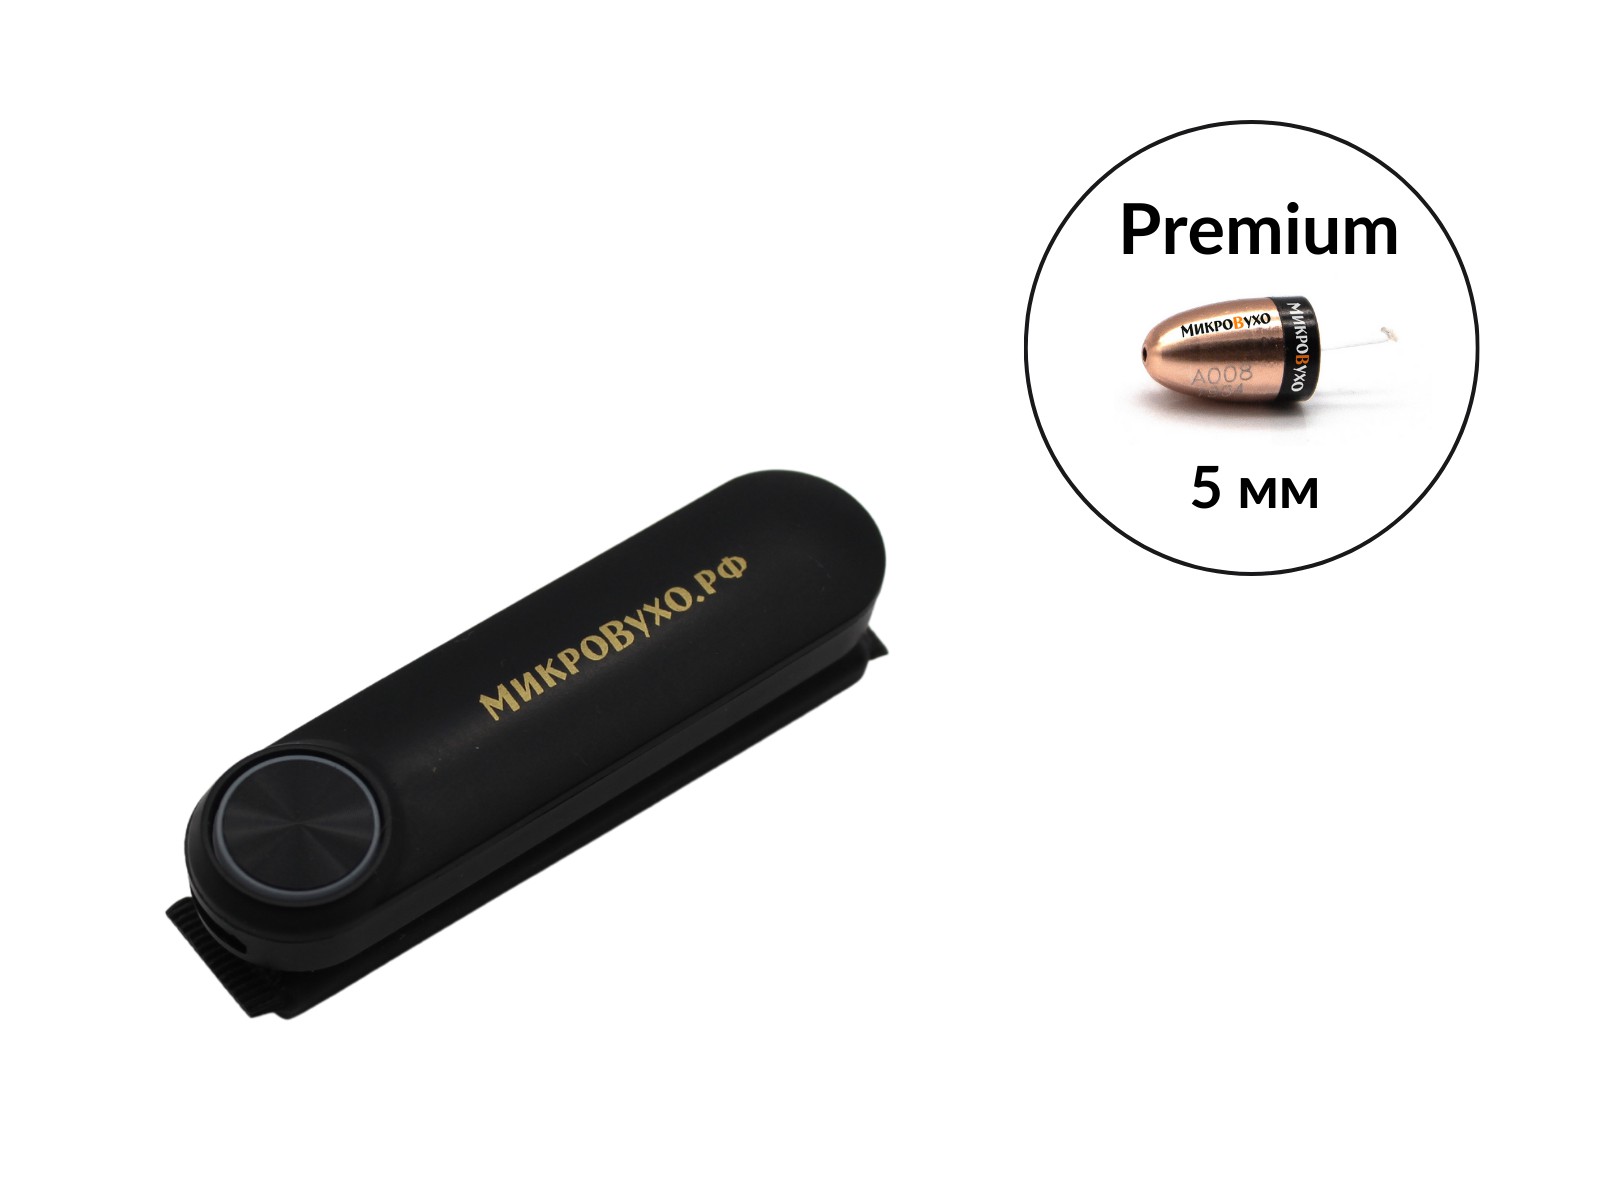 Гарнитура Bluetooth Box Standard Plus с капсульным микронаушником Premium - изображение